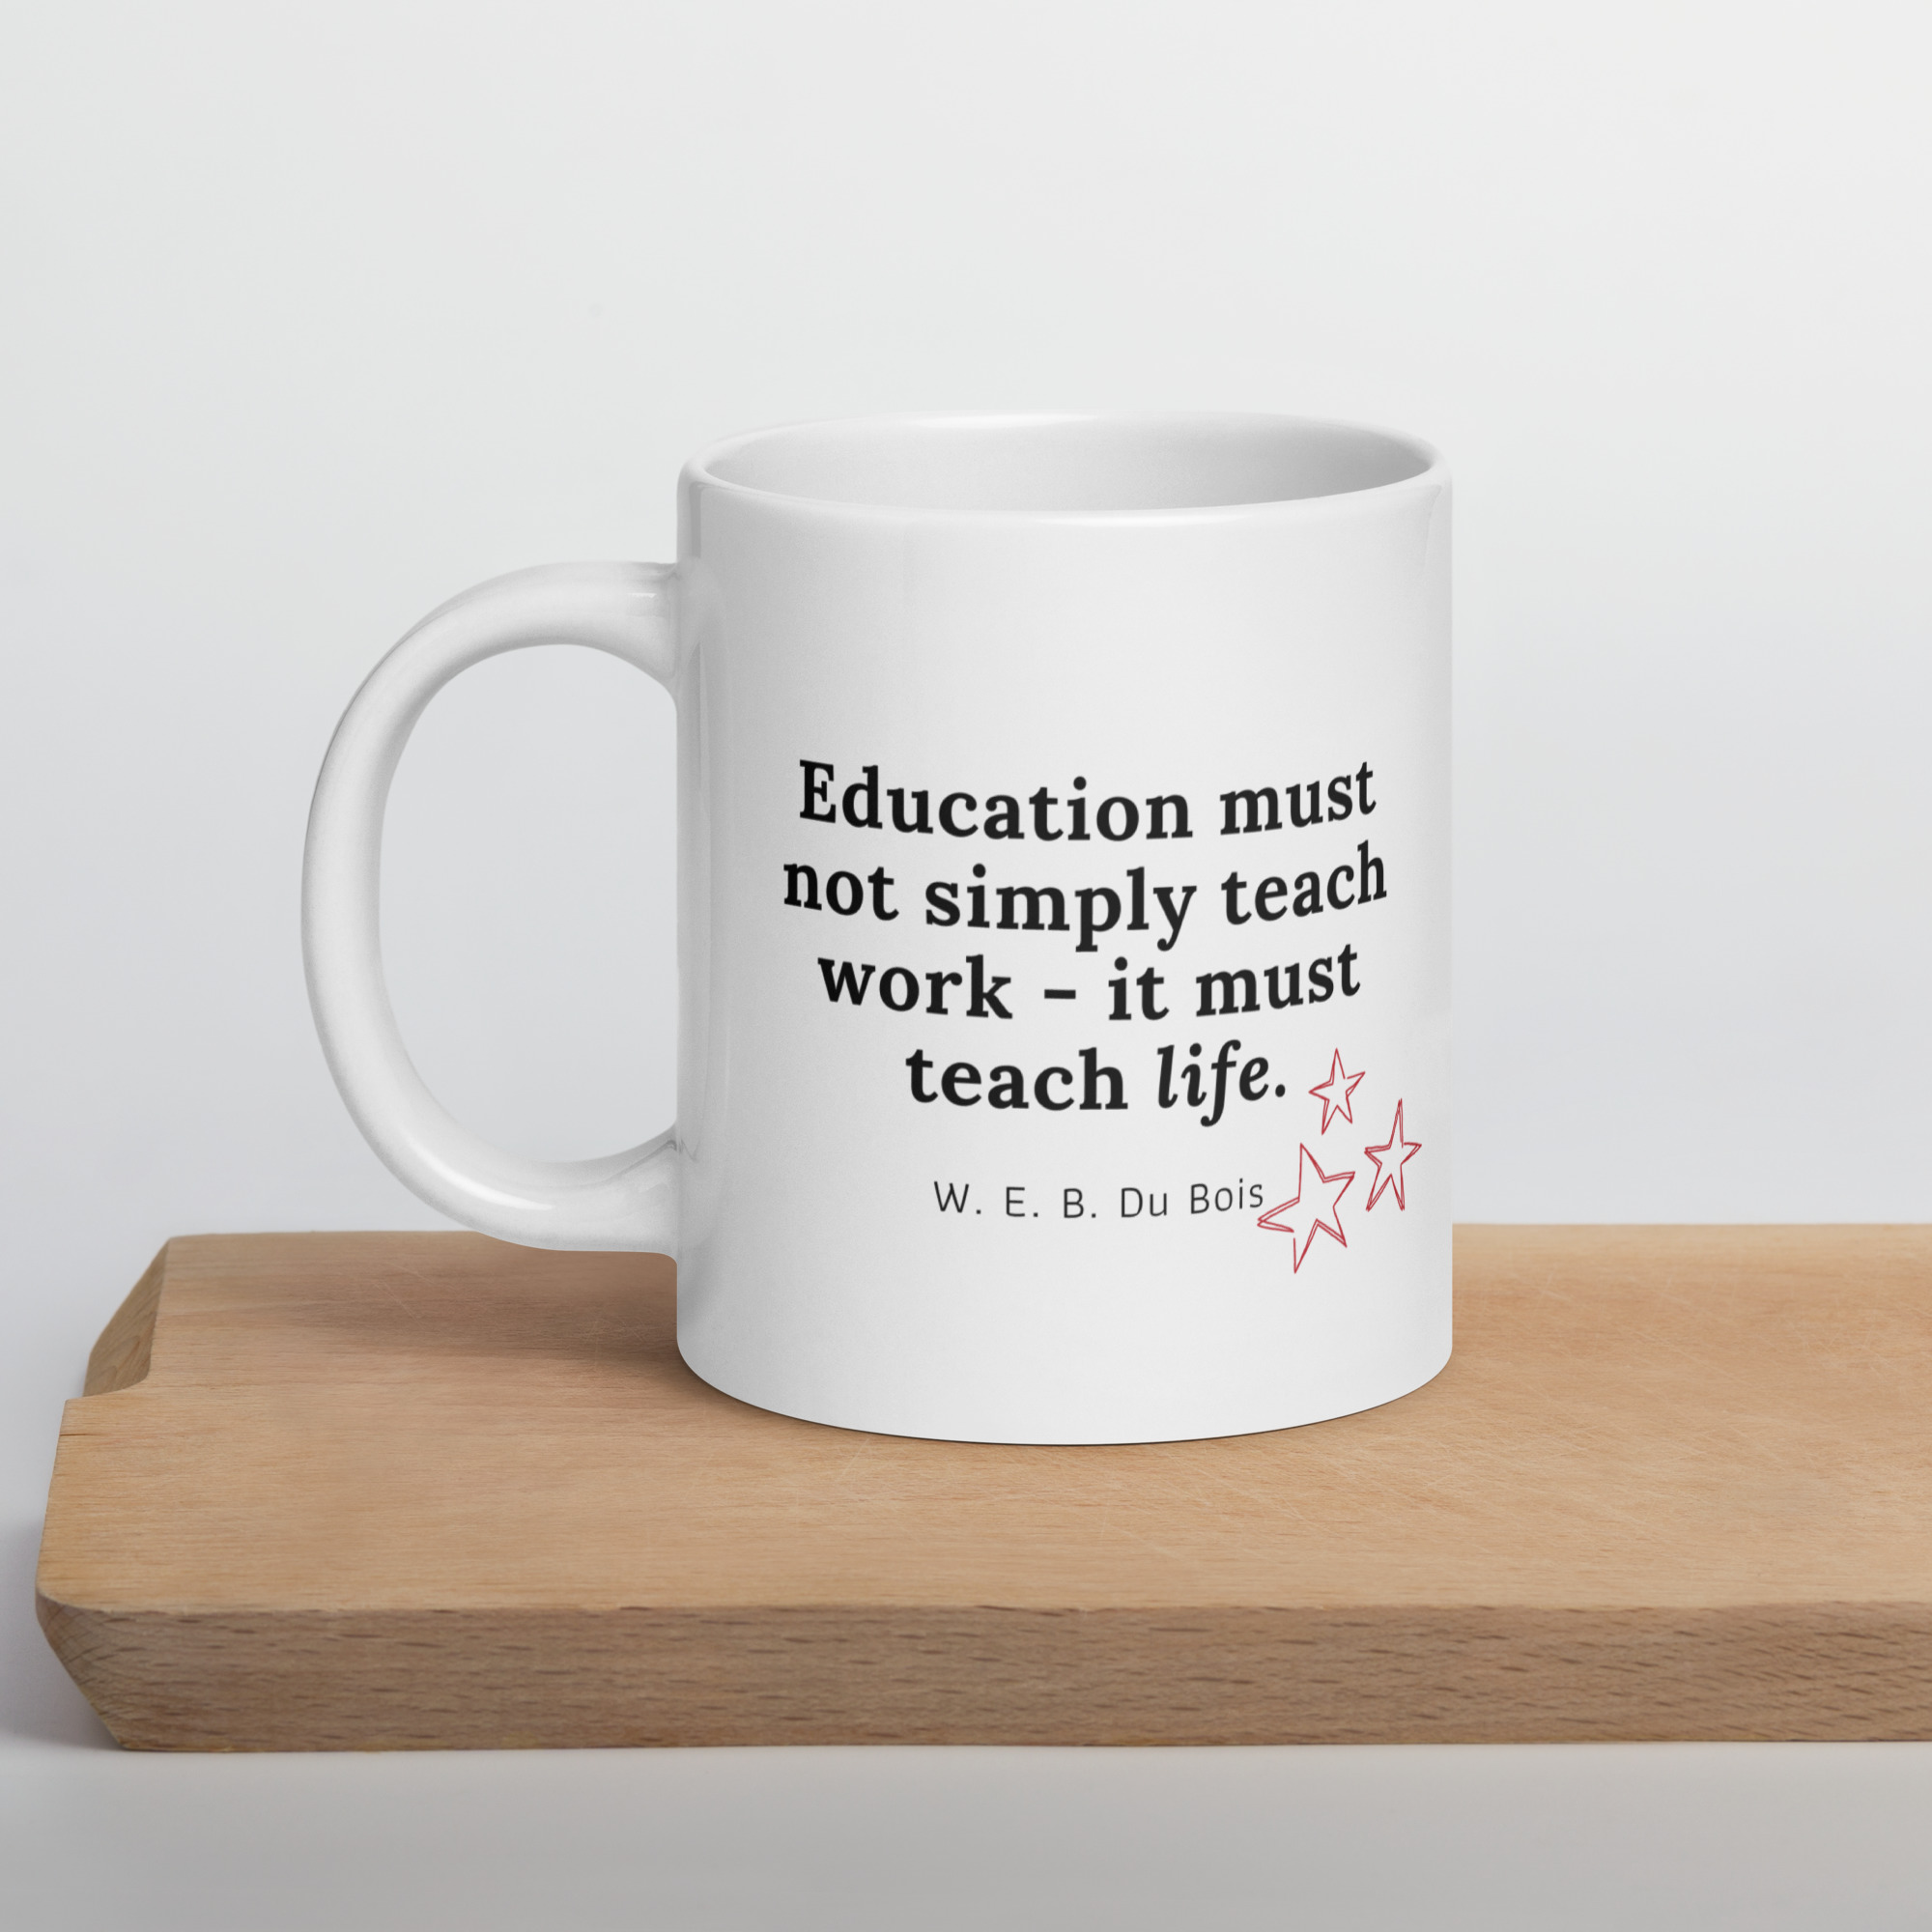 education must teach life - mug